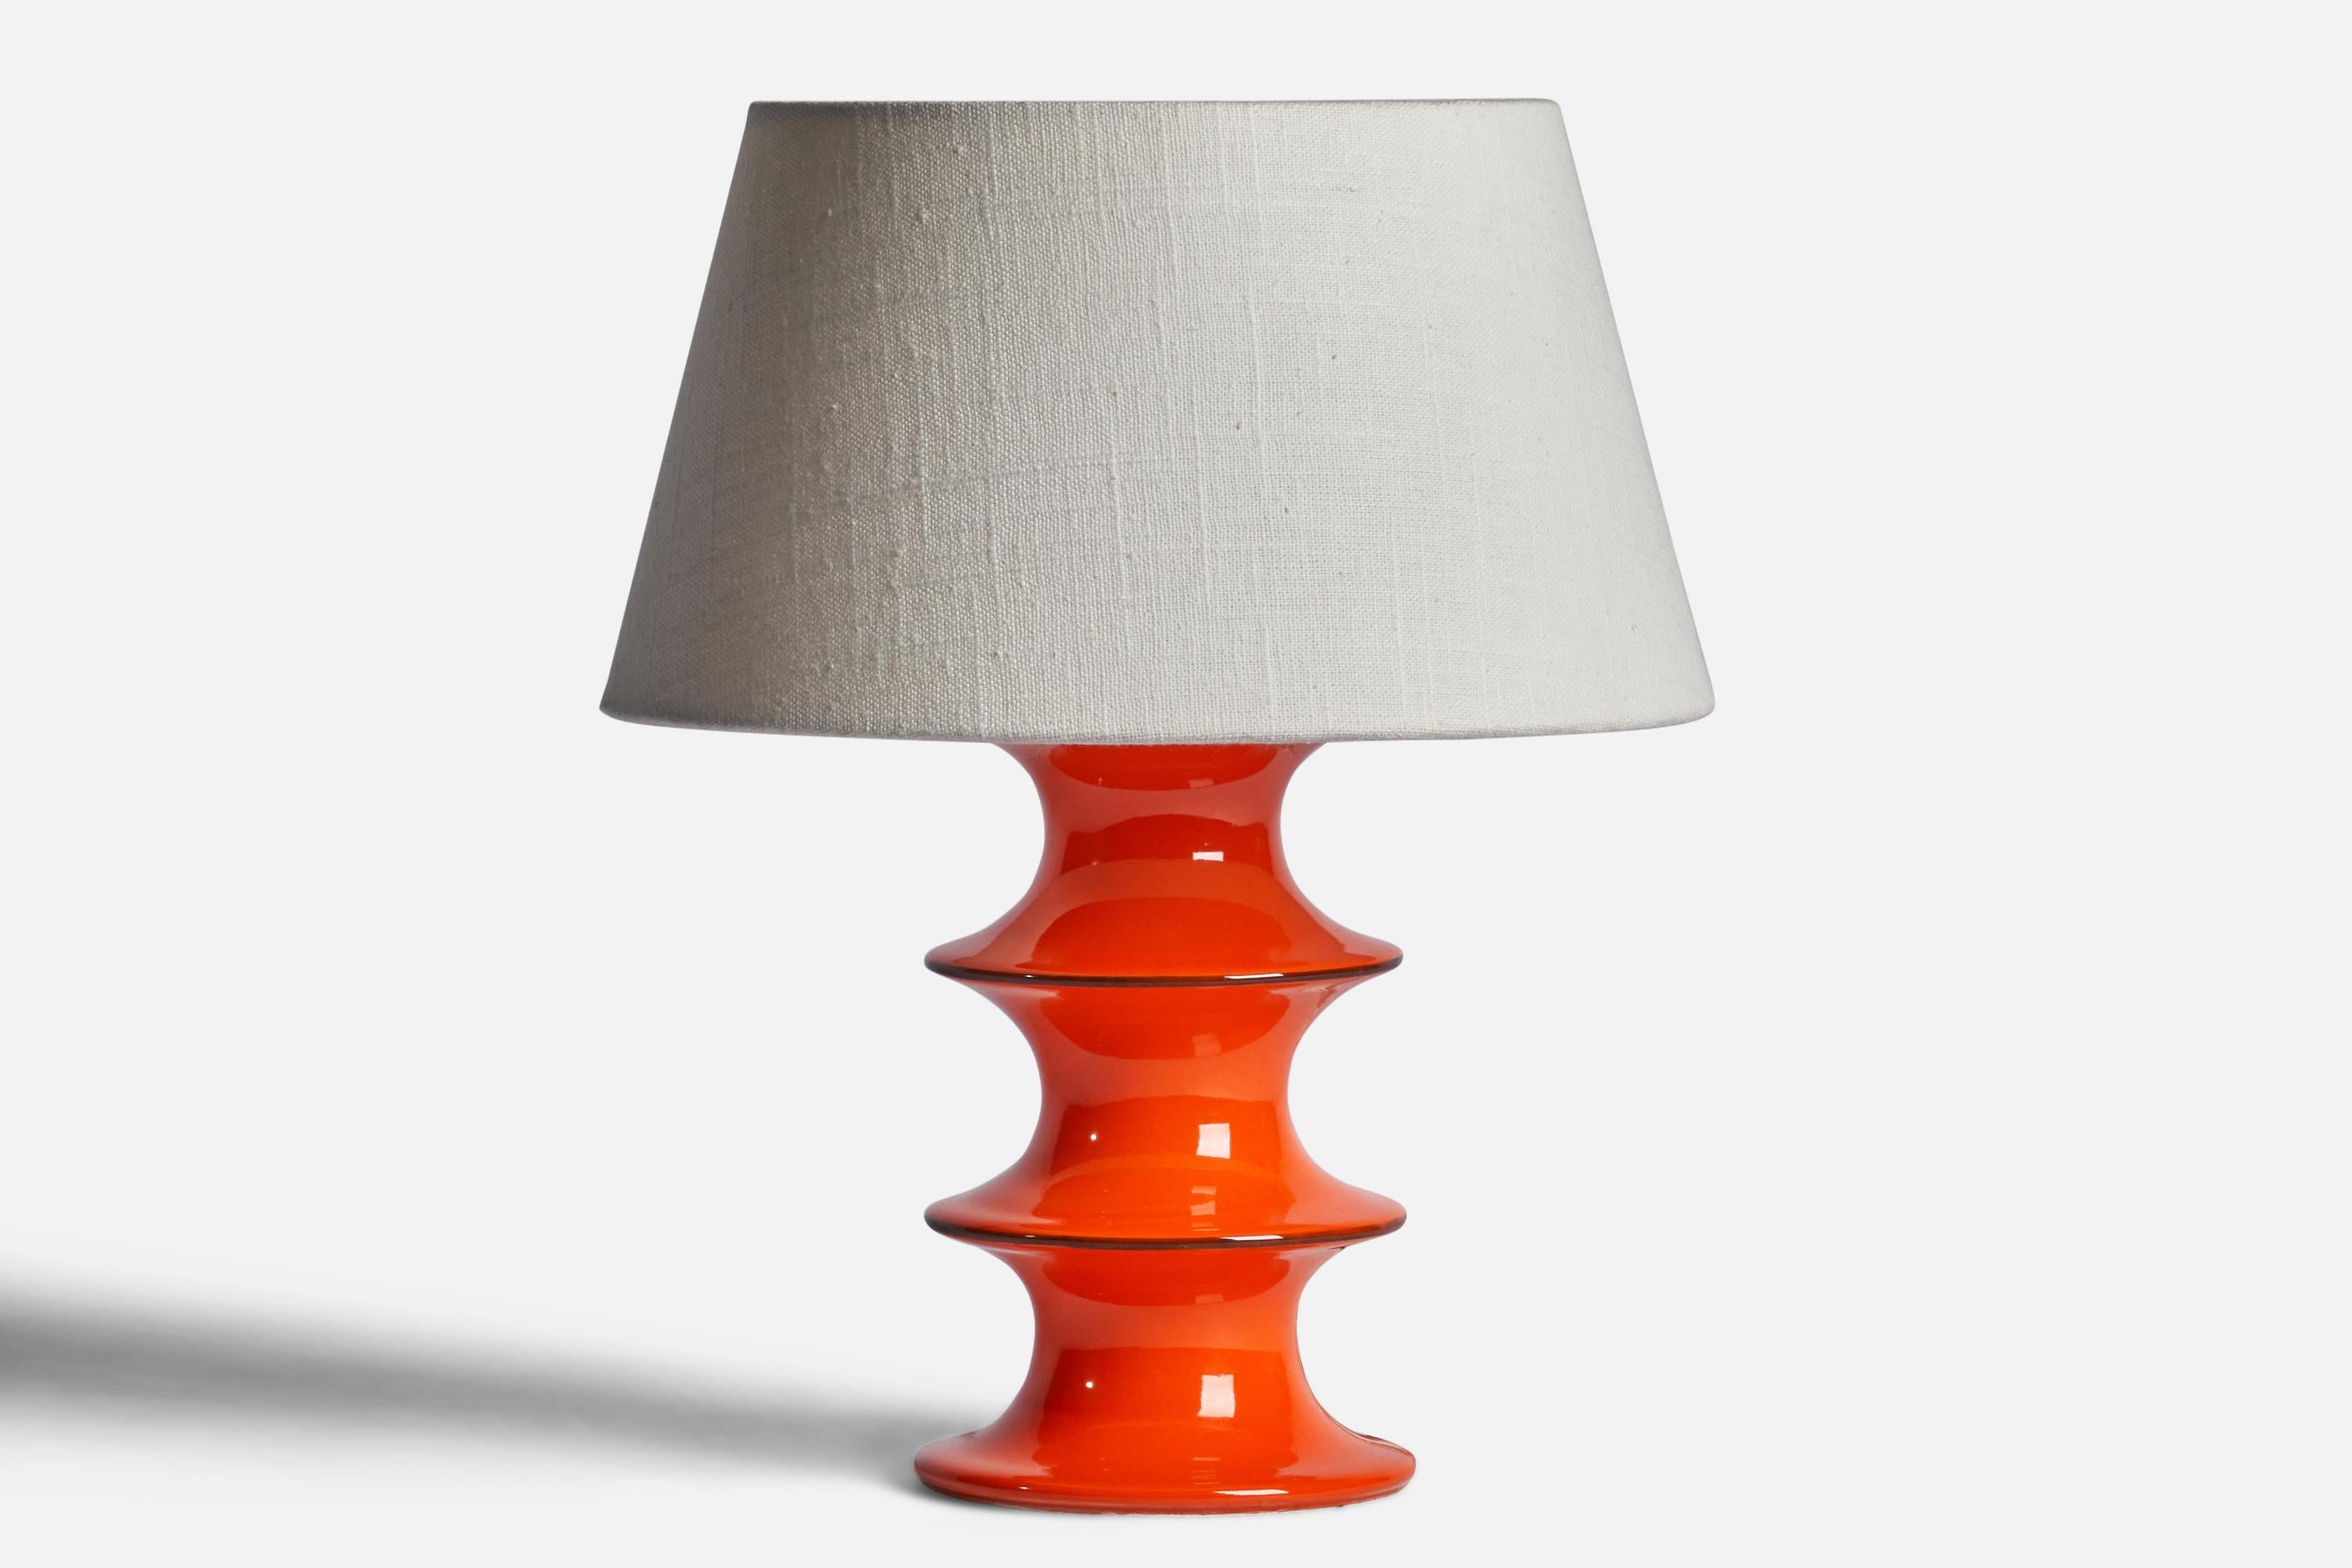 Lampe de table en grès émaillé orange, conçue par Inger Persson et produite par Rörstrand, Suède, années 1950.

Dimensions de la lampe (pouces) : 9.35